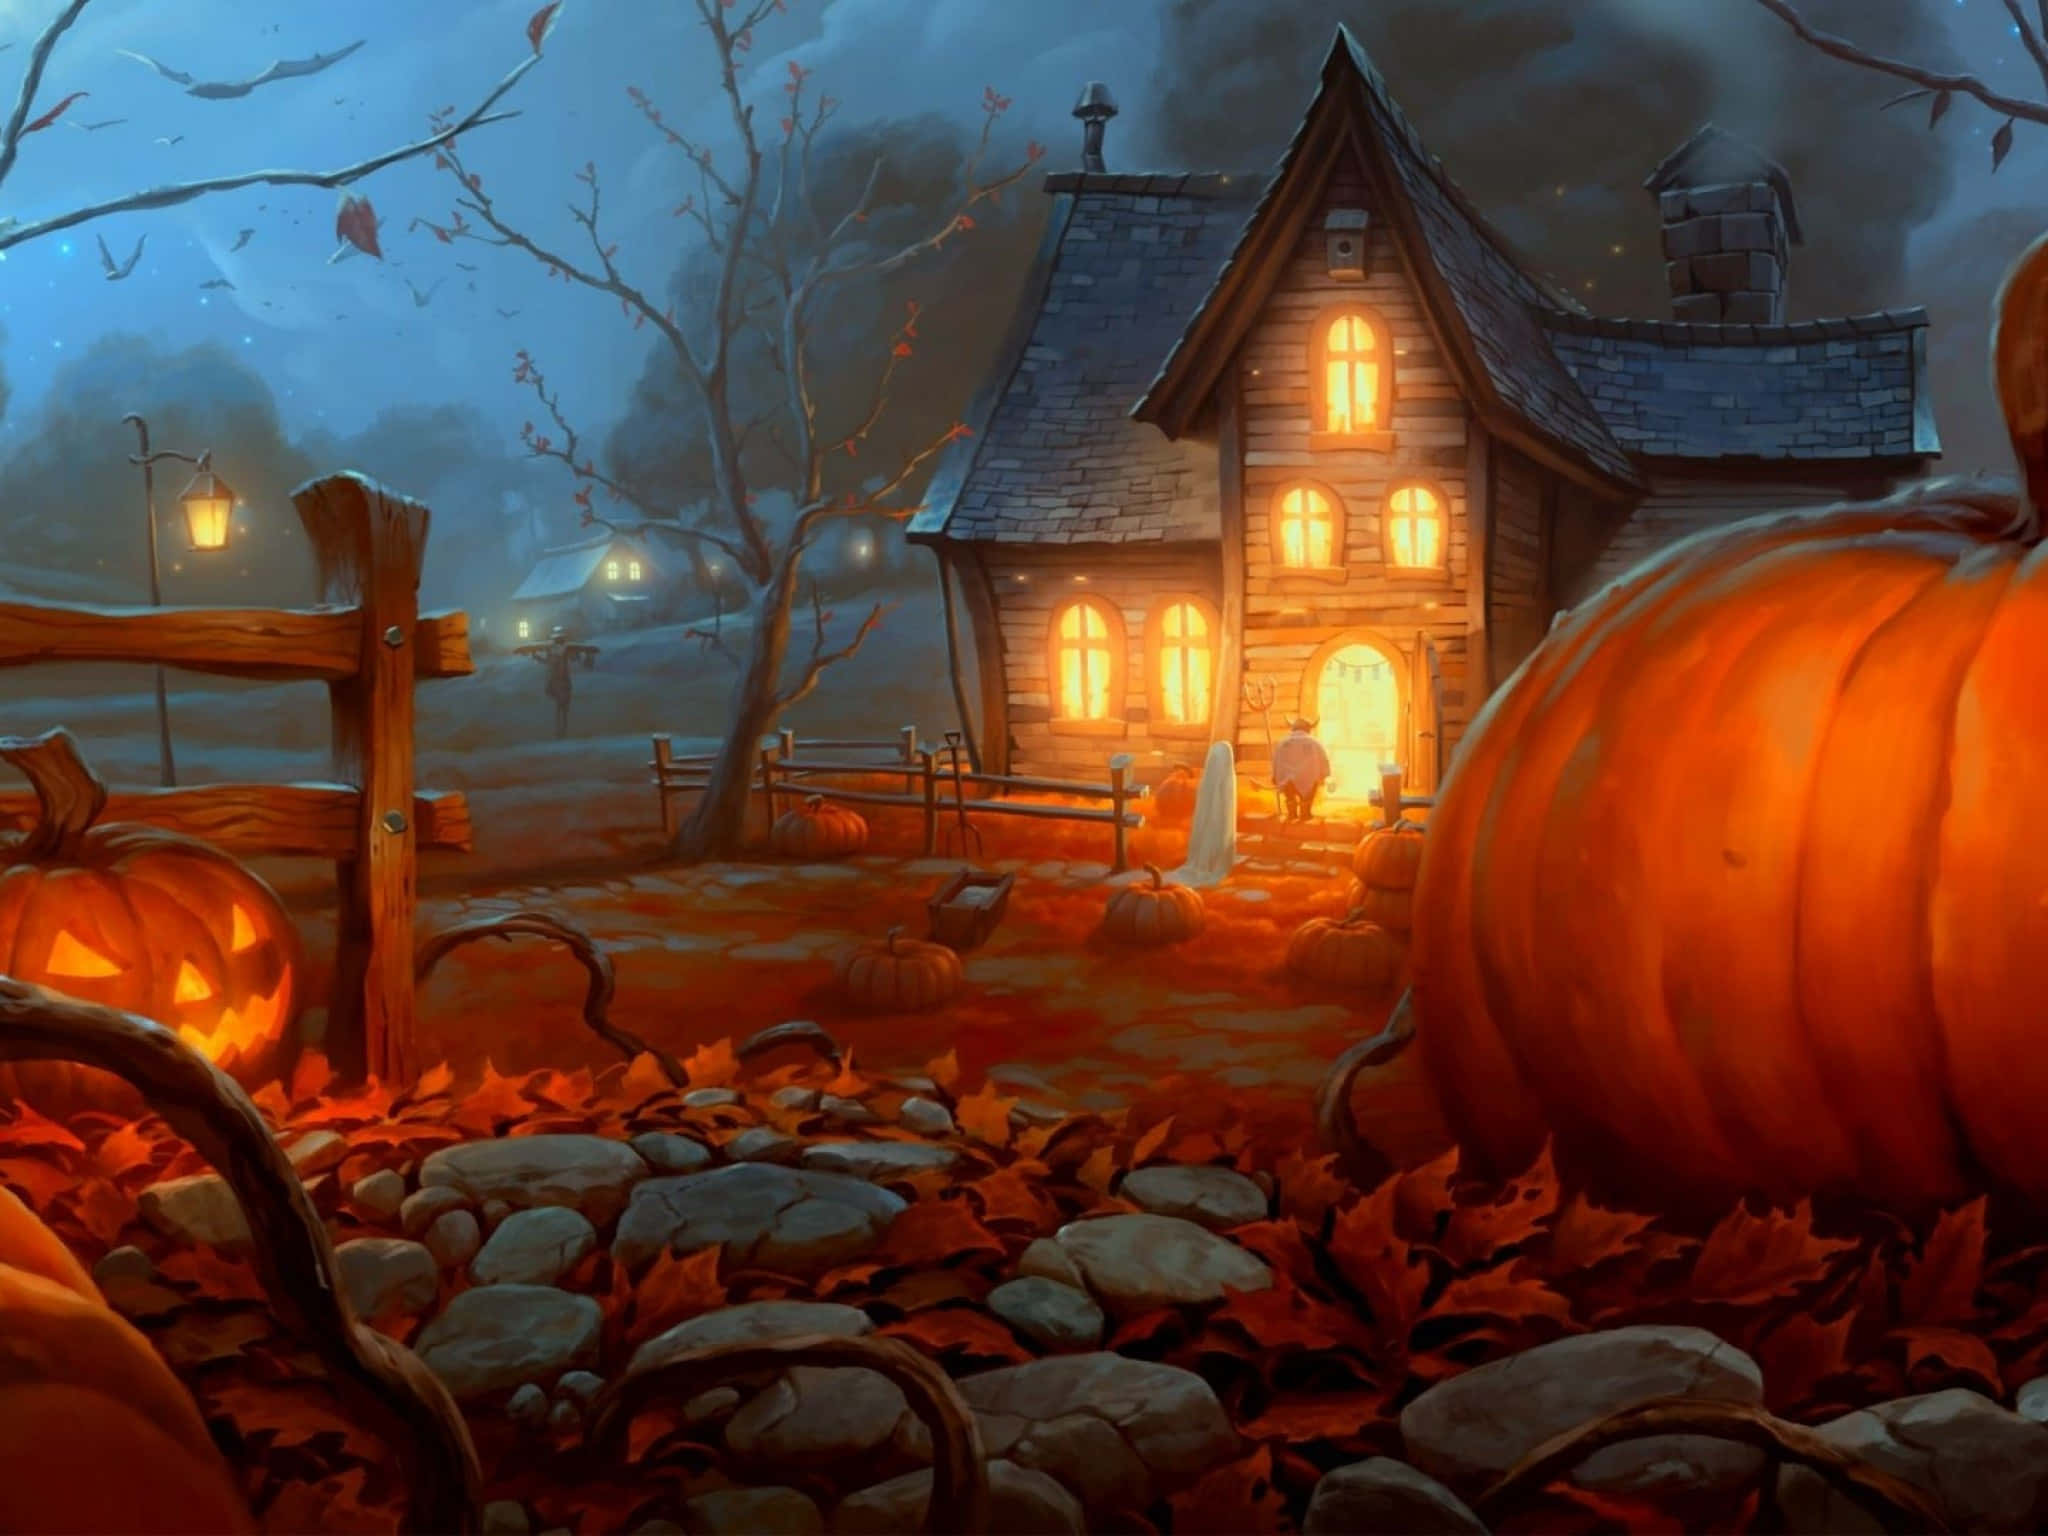 Sumérgeteen El Espíritu De Halloween Con Estas Espeluznantes Decoraciones Para El Jardín. Fondo de pantalla